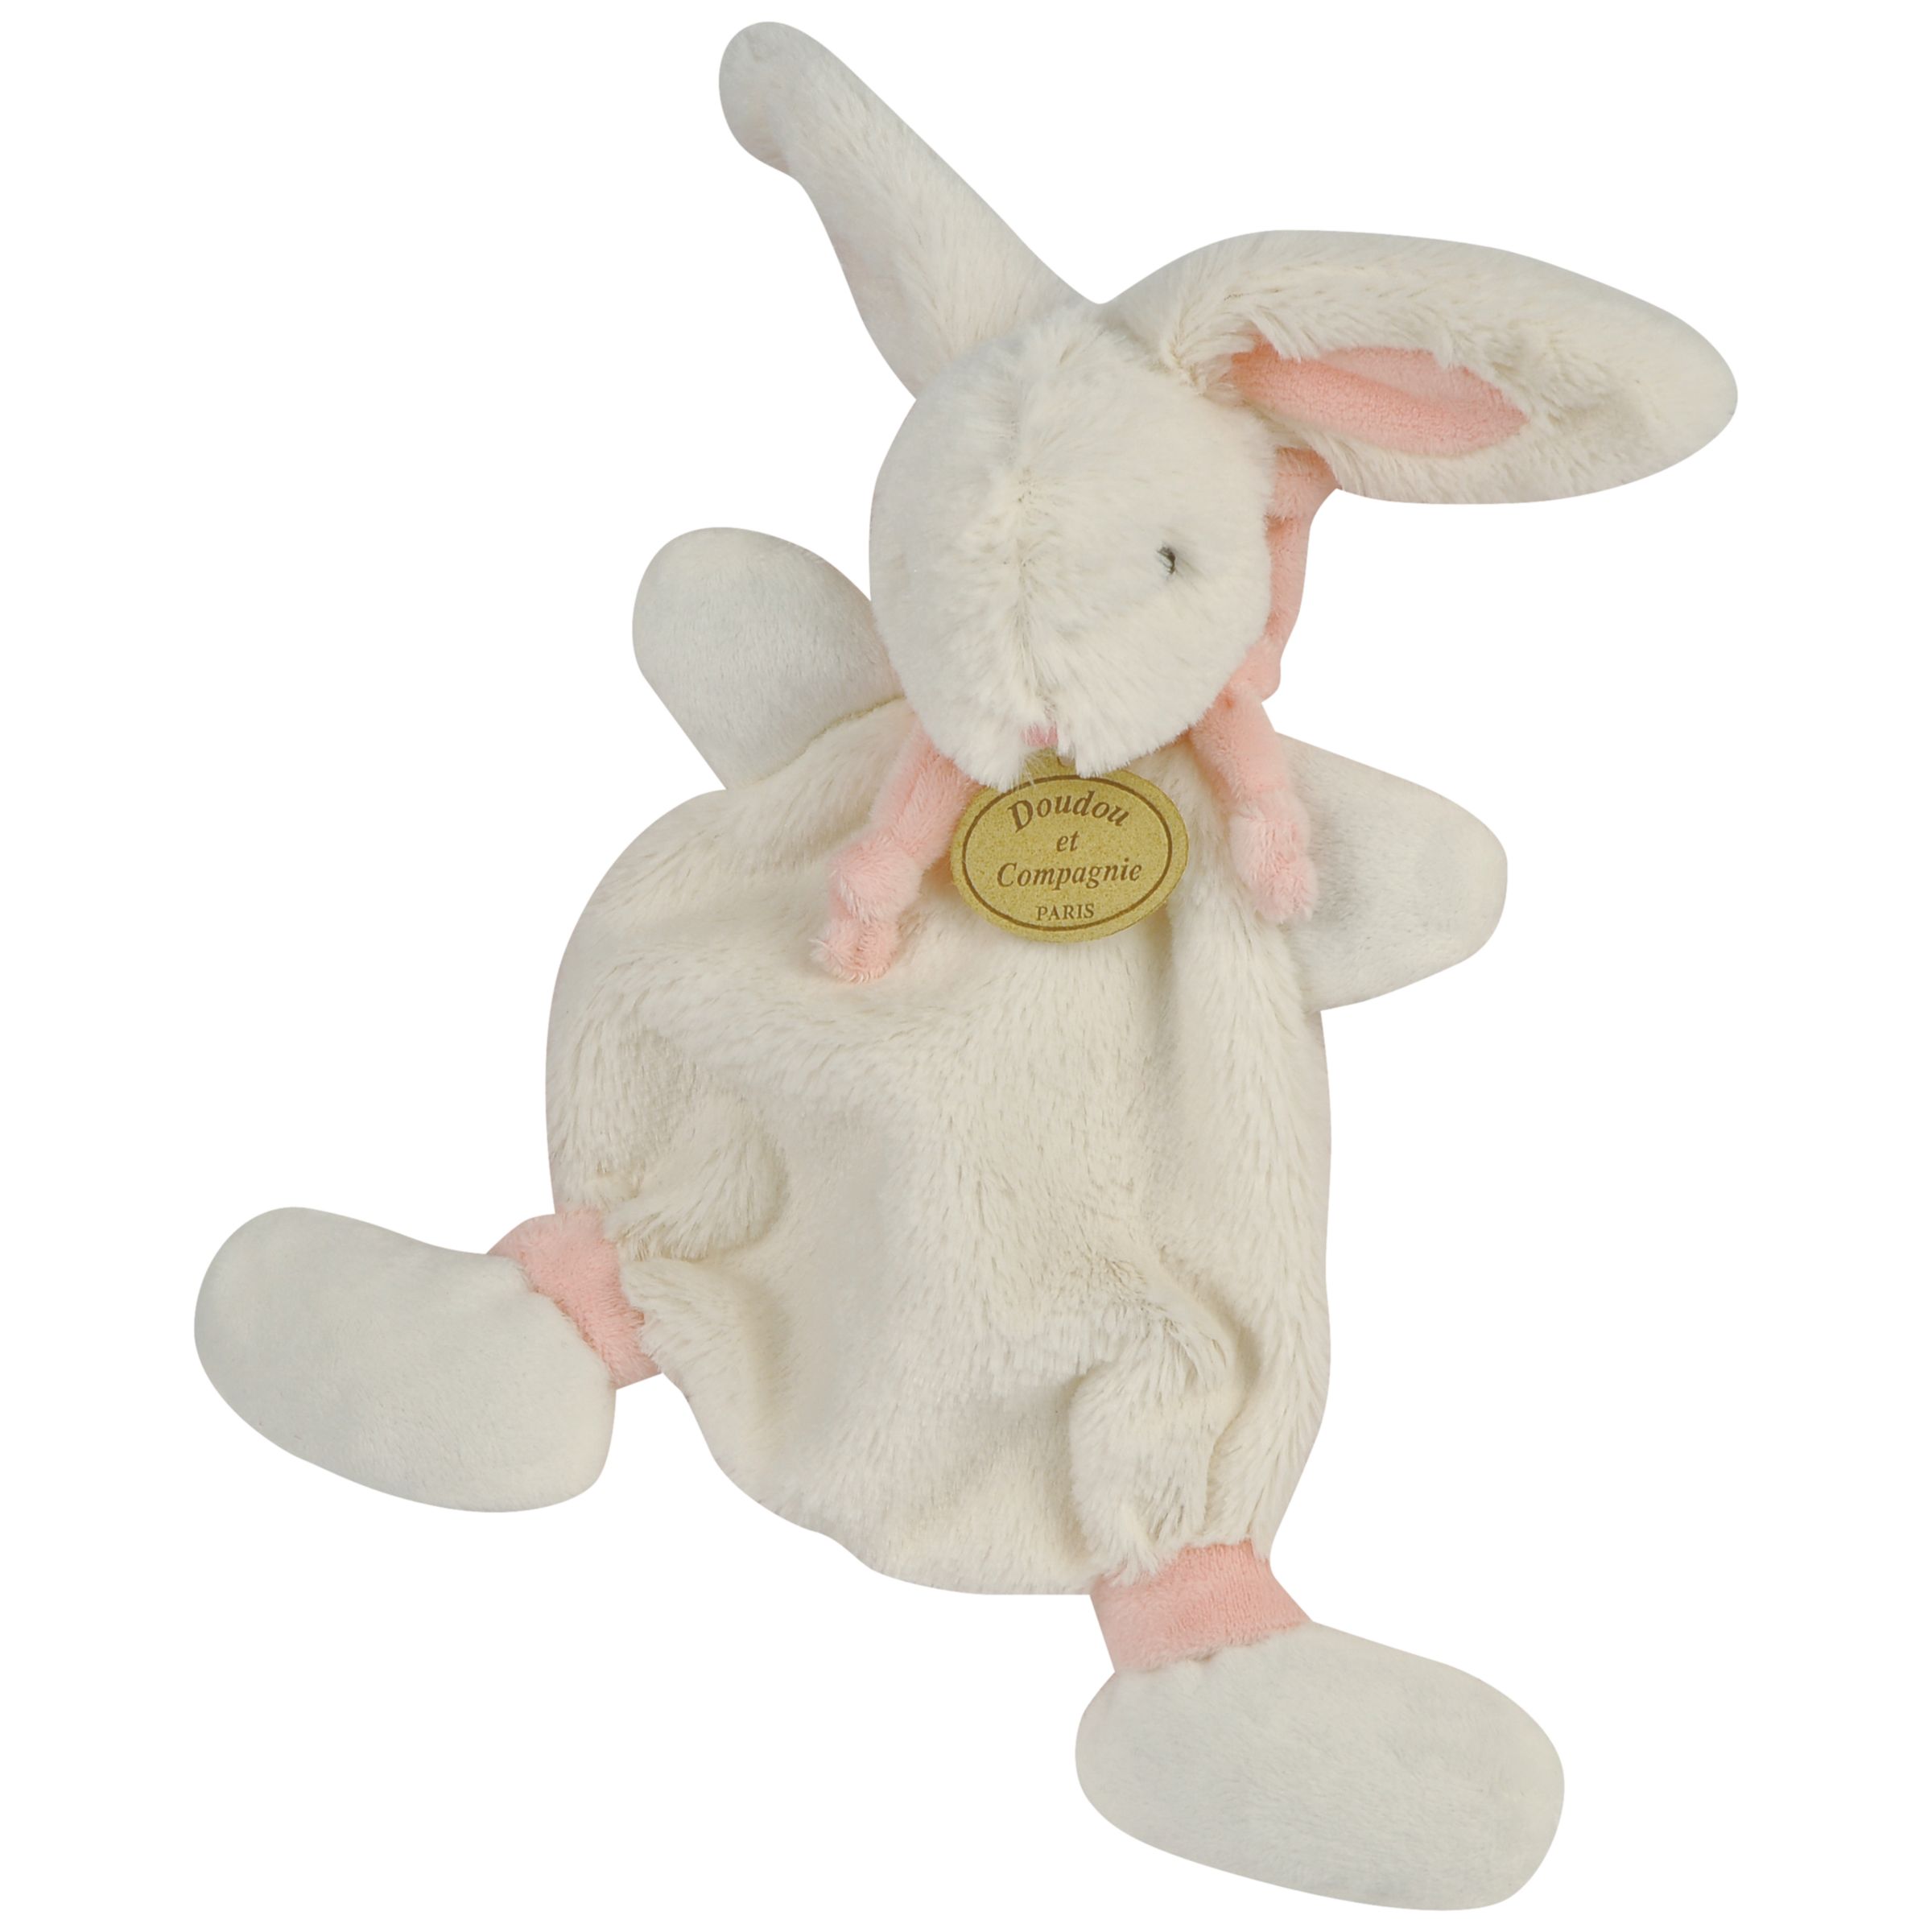 Doudou et Compagnie Rabbit Baby Comforter, Pink